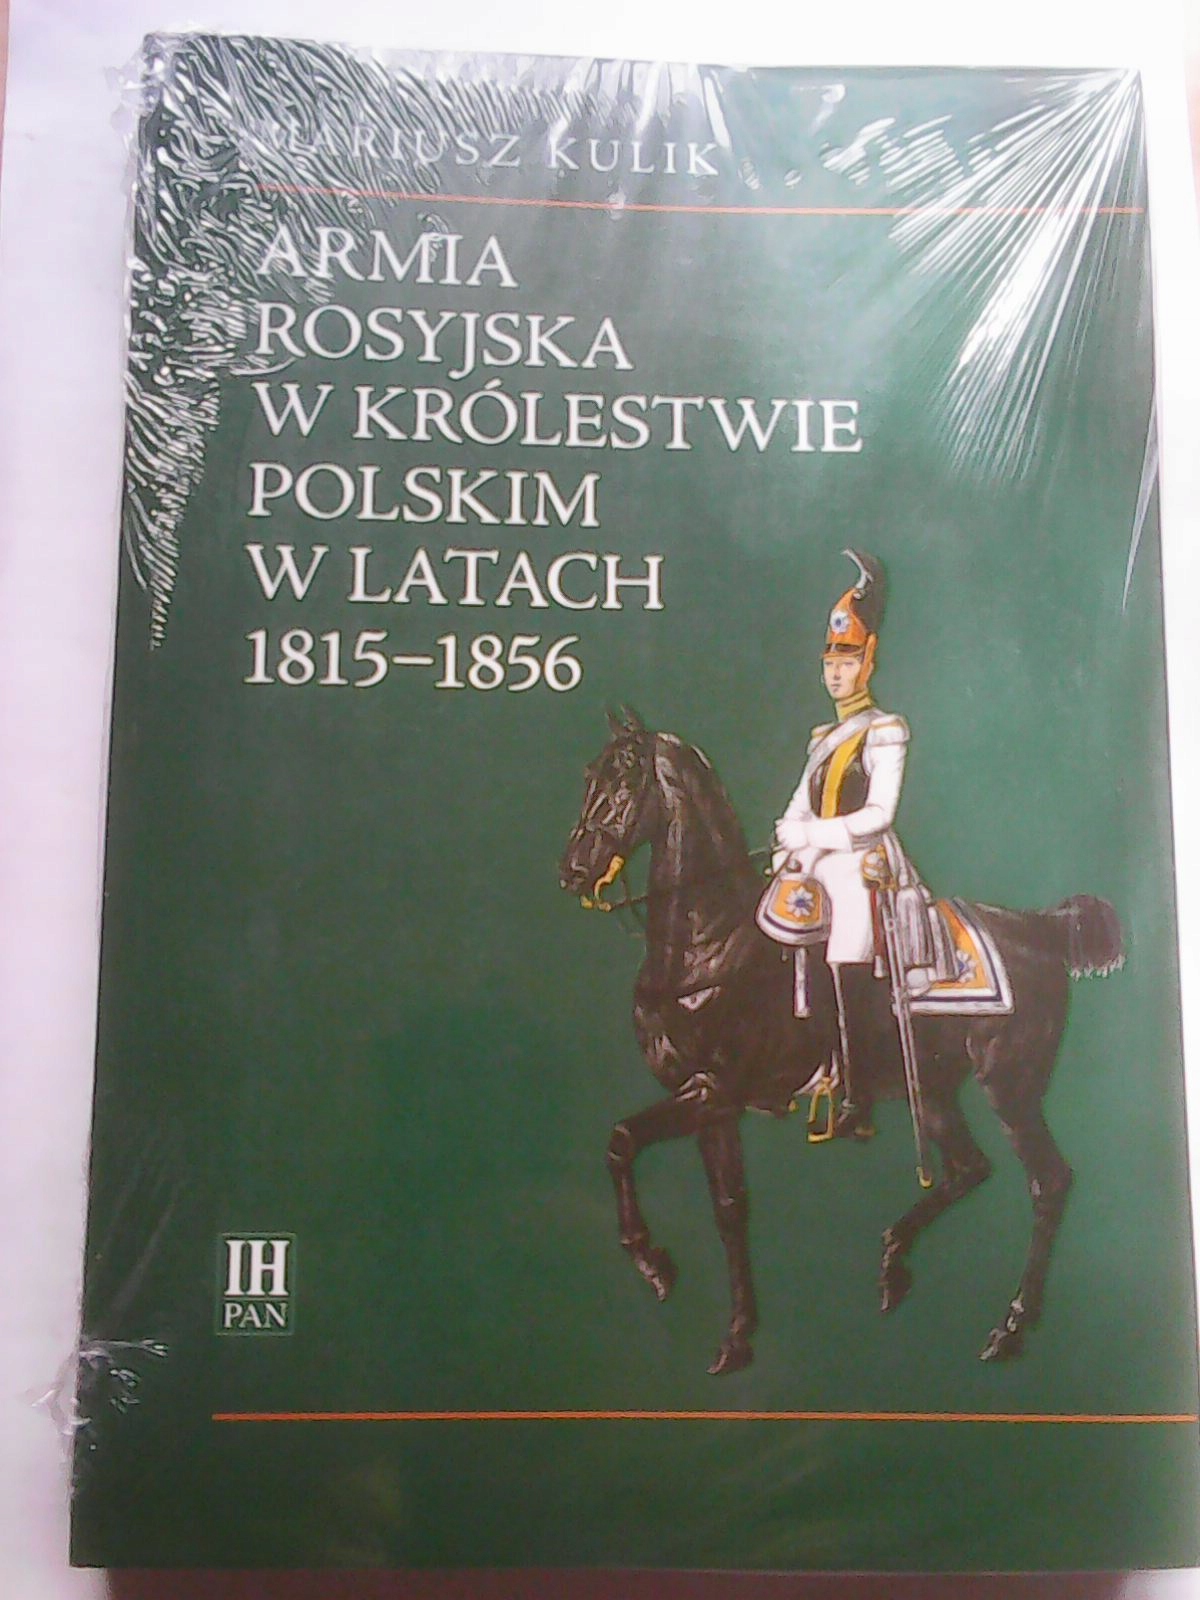 ARMIA ROSYJSKA W KRÓLESTWIE POLSKIM W LATACH 1815-1856